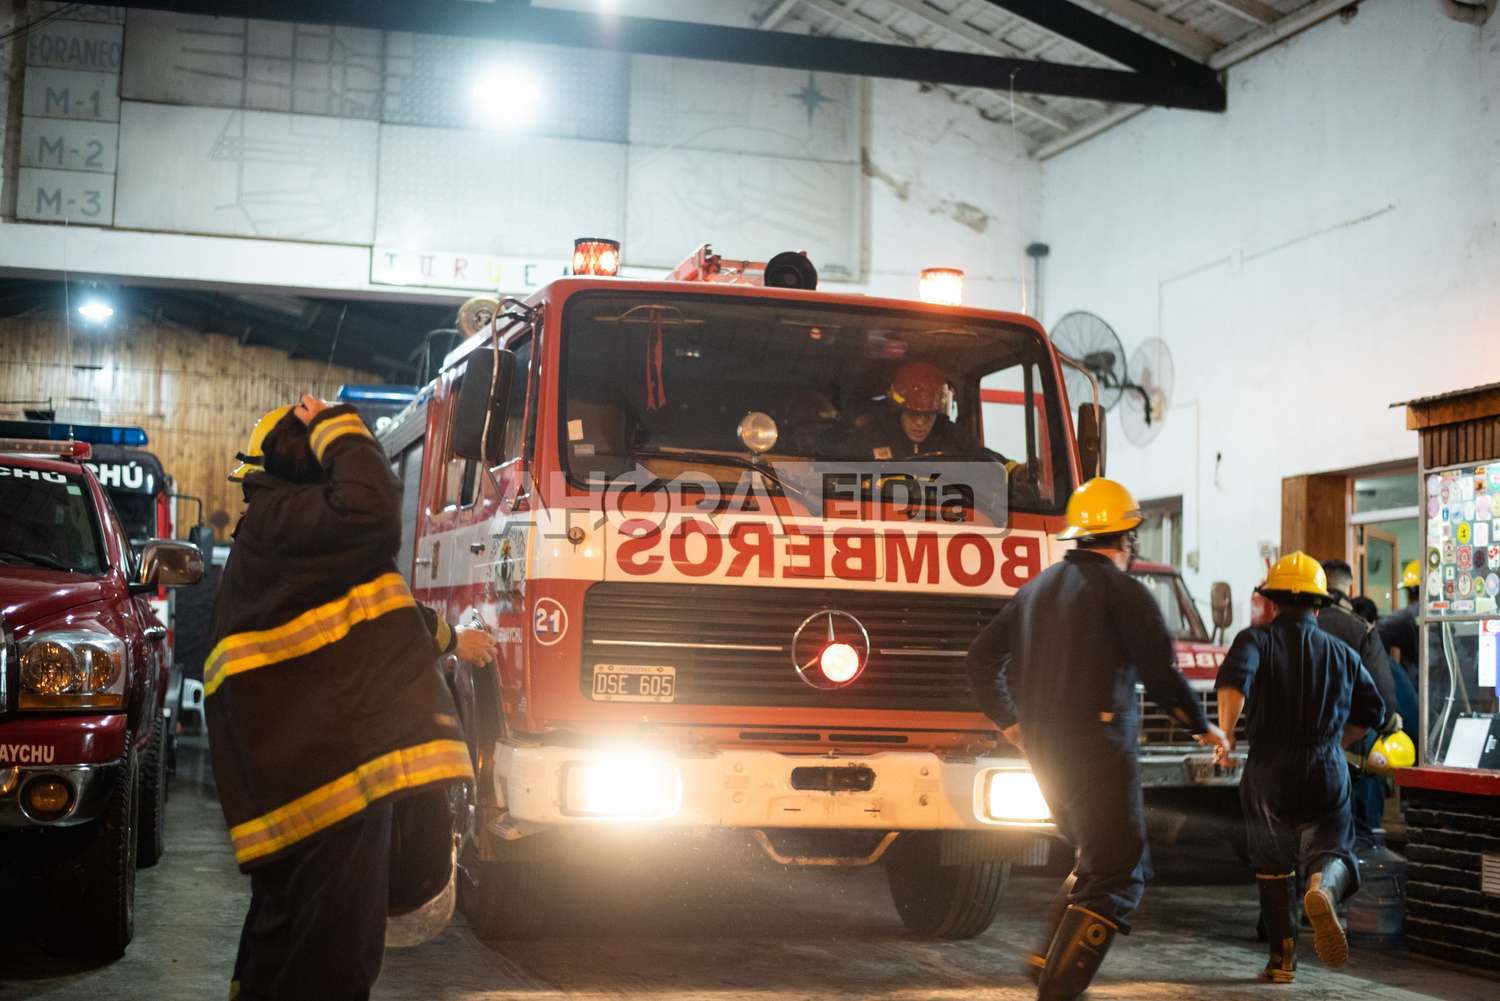 Agosto agitado para los bomberos de Gualeguaychú: tuvieron el mes más convulsionado de los últimos 5 años